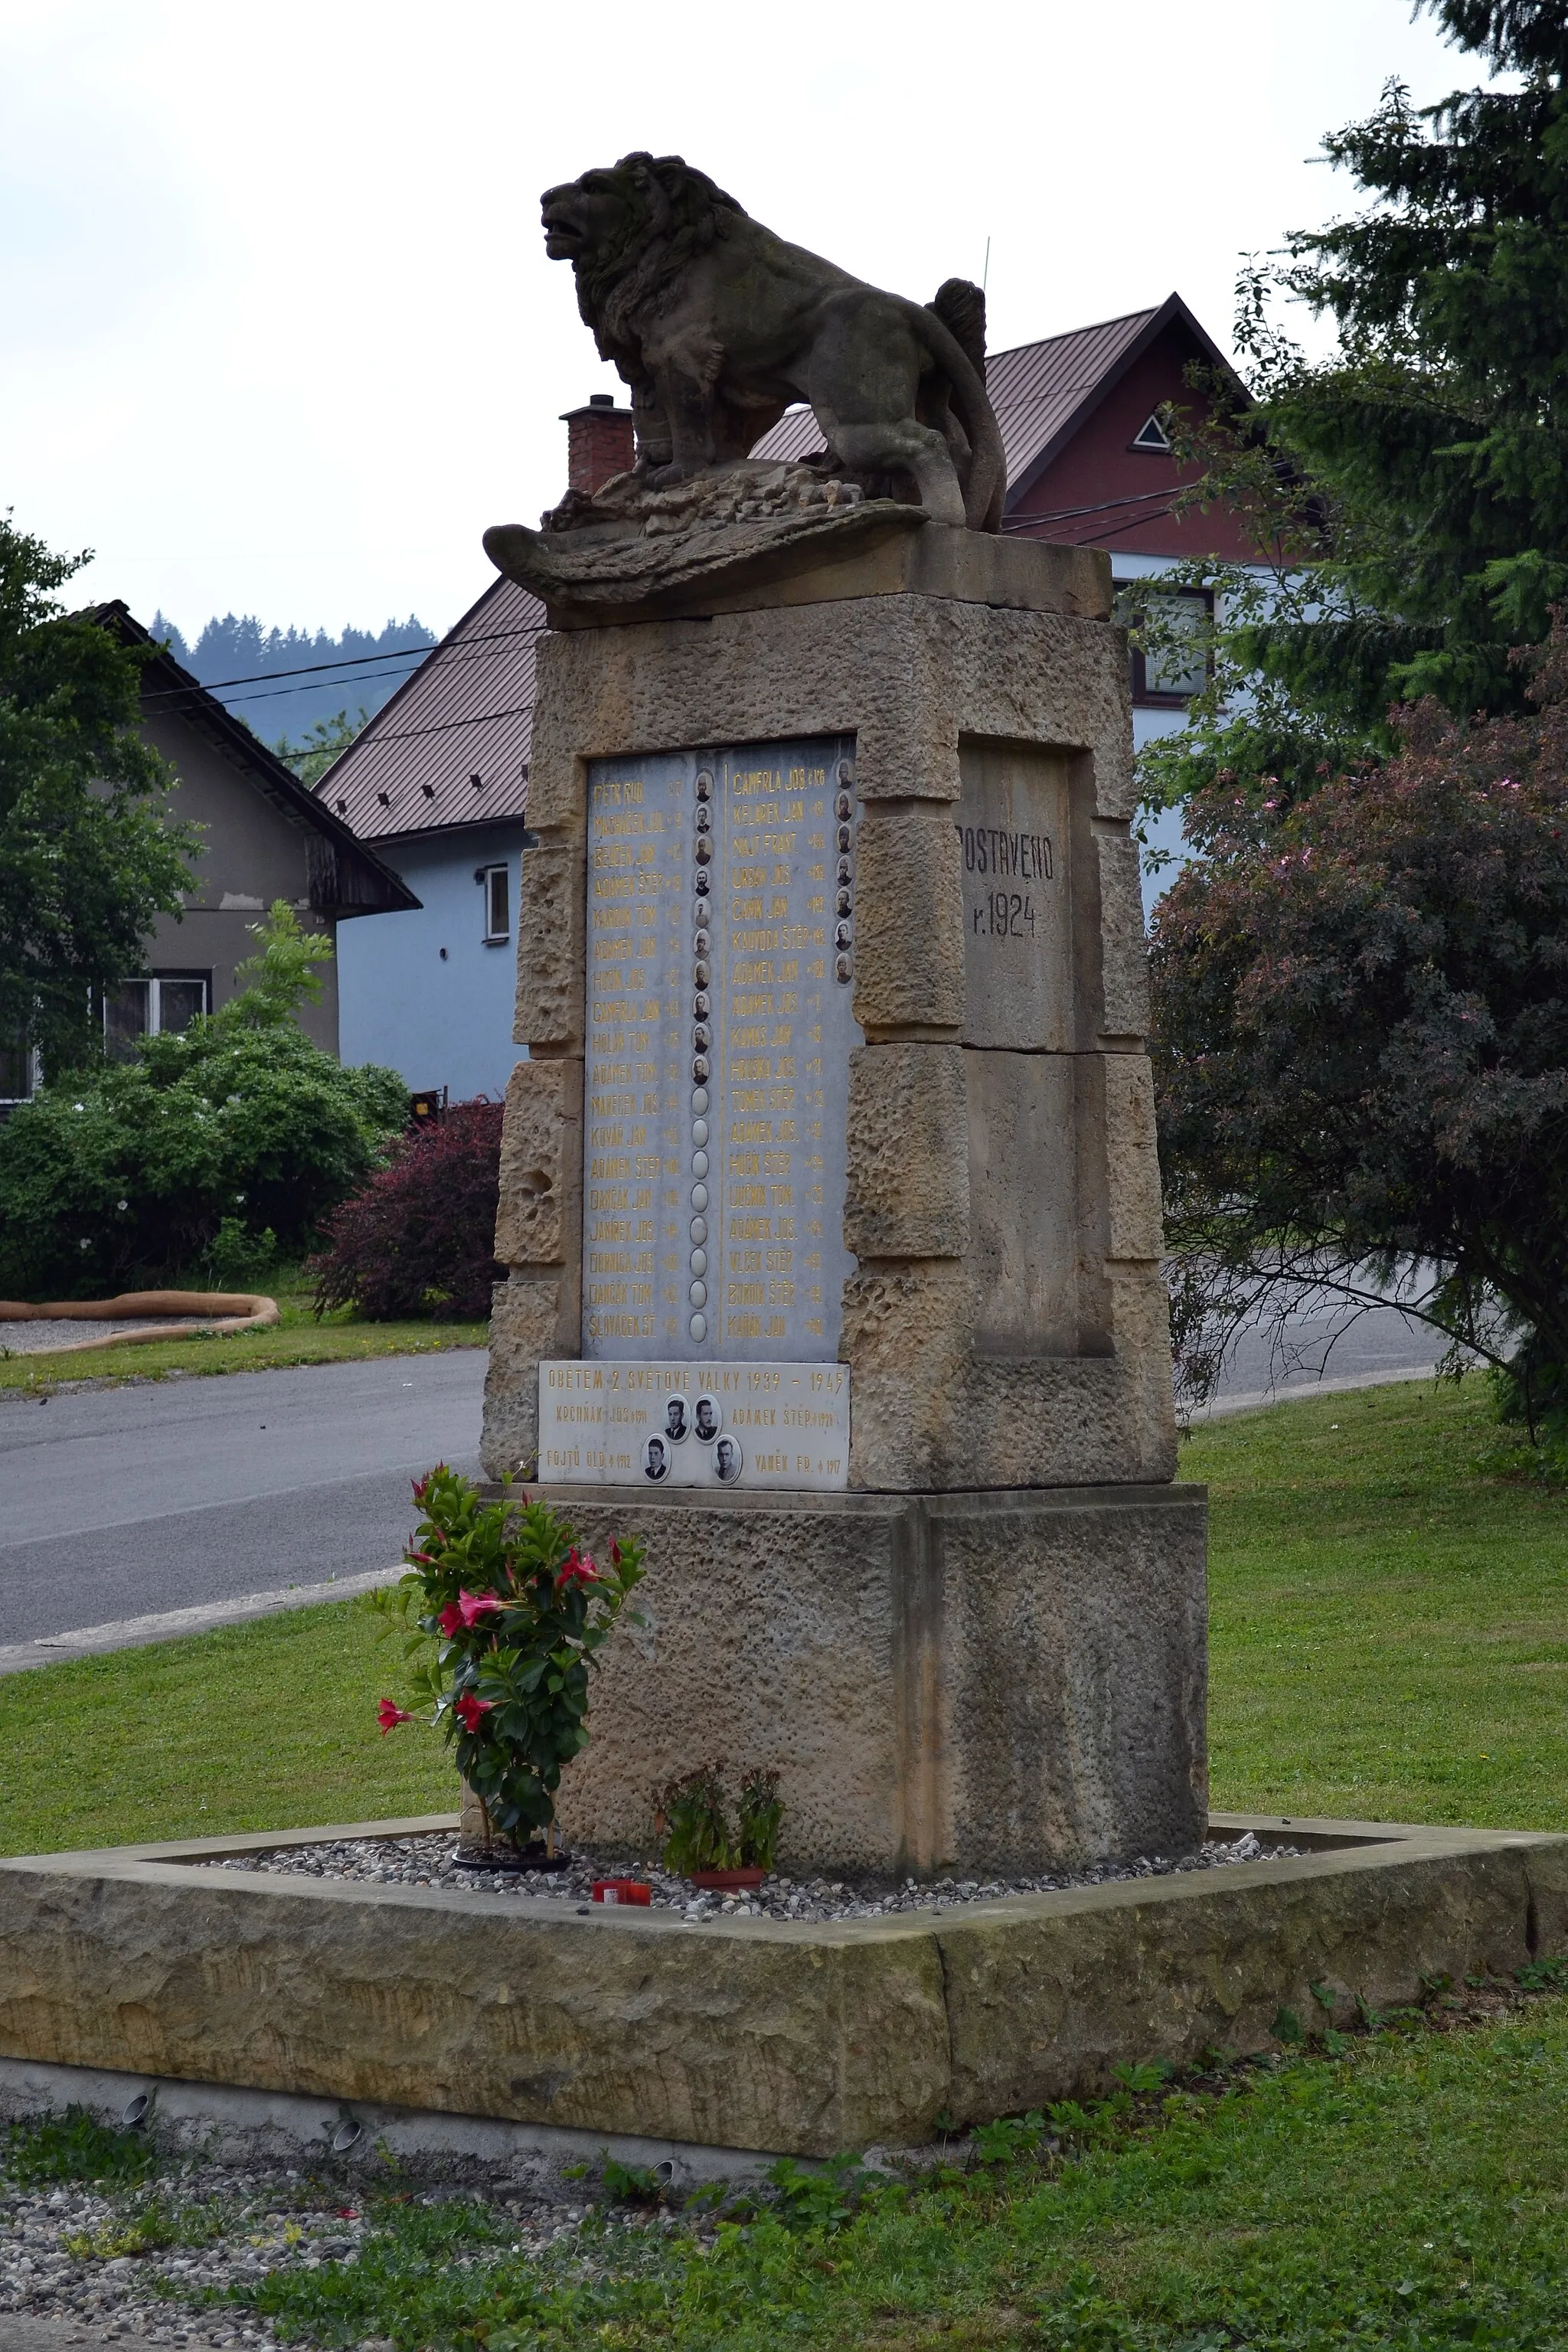 Photo showing: World War memorial in Pržno, Vsetín district, Zlín region, Czech Republic.